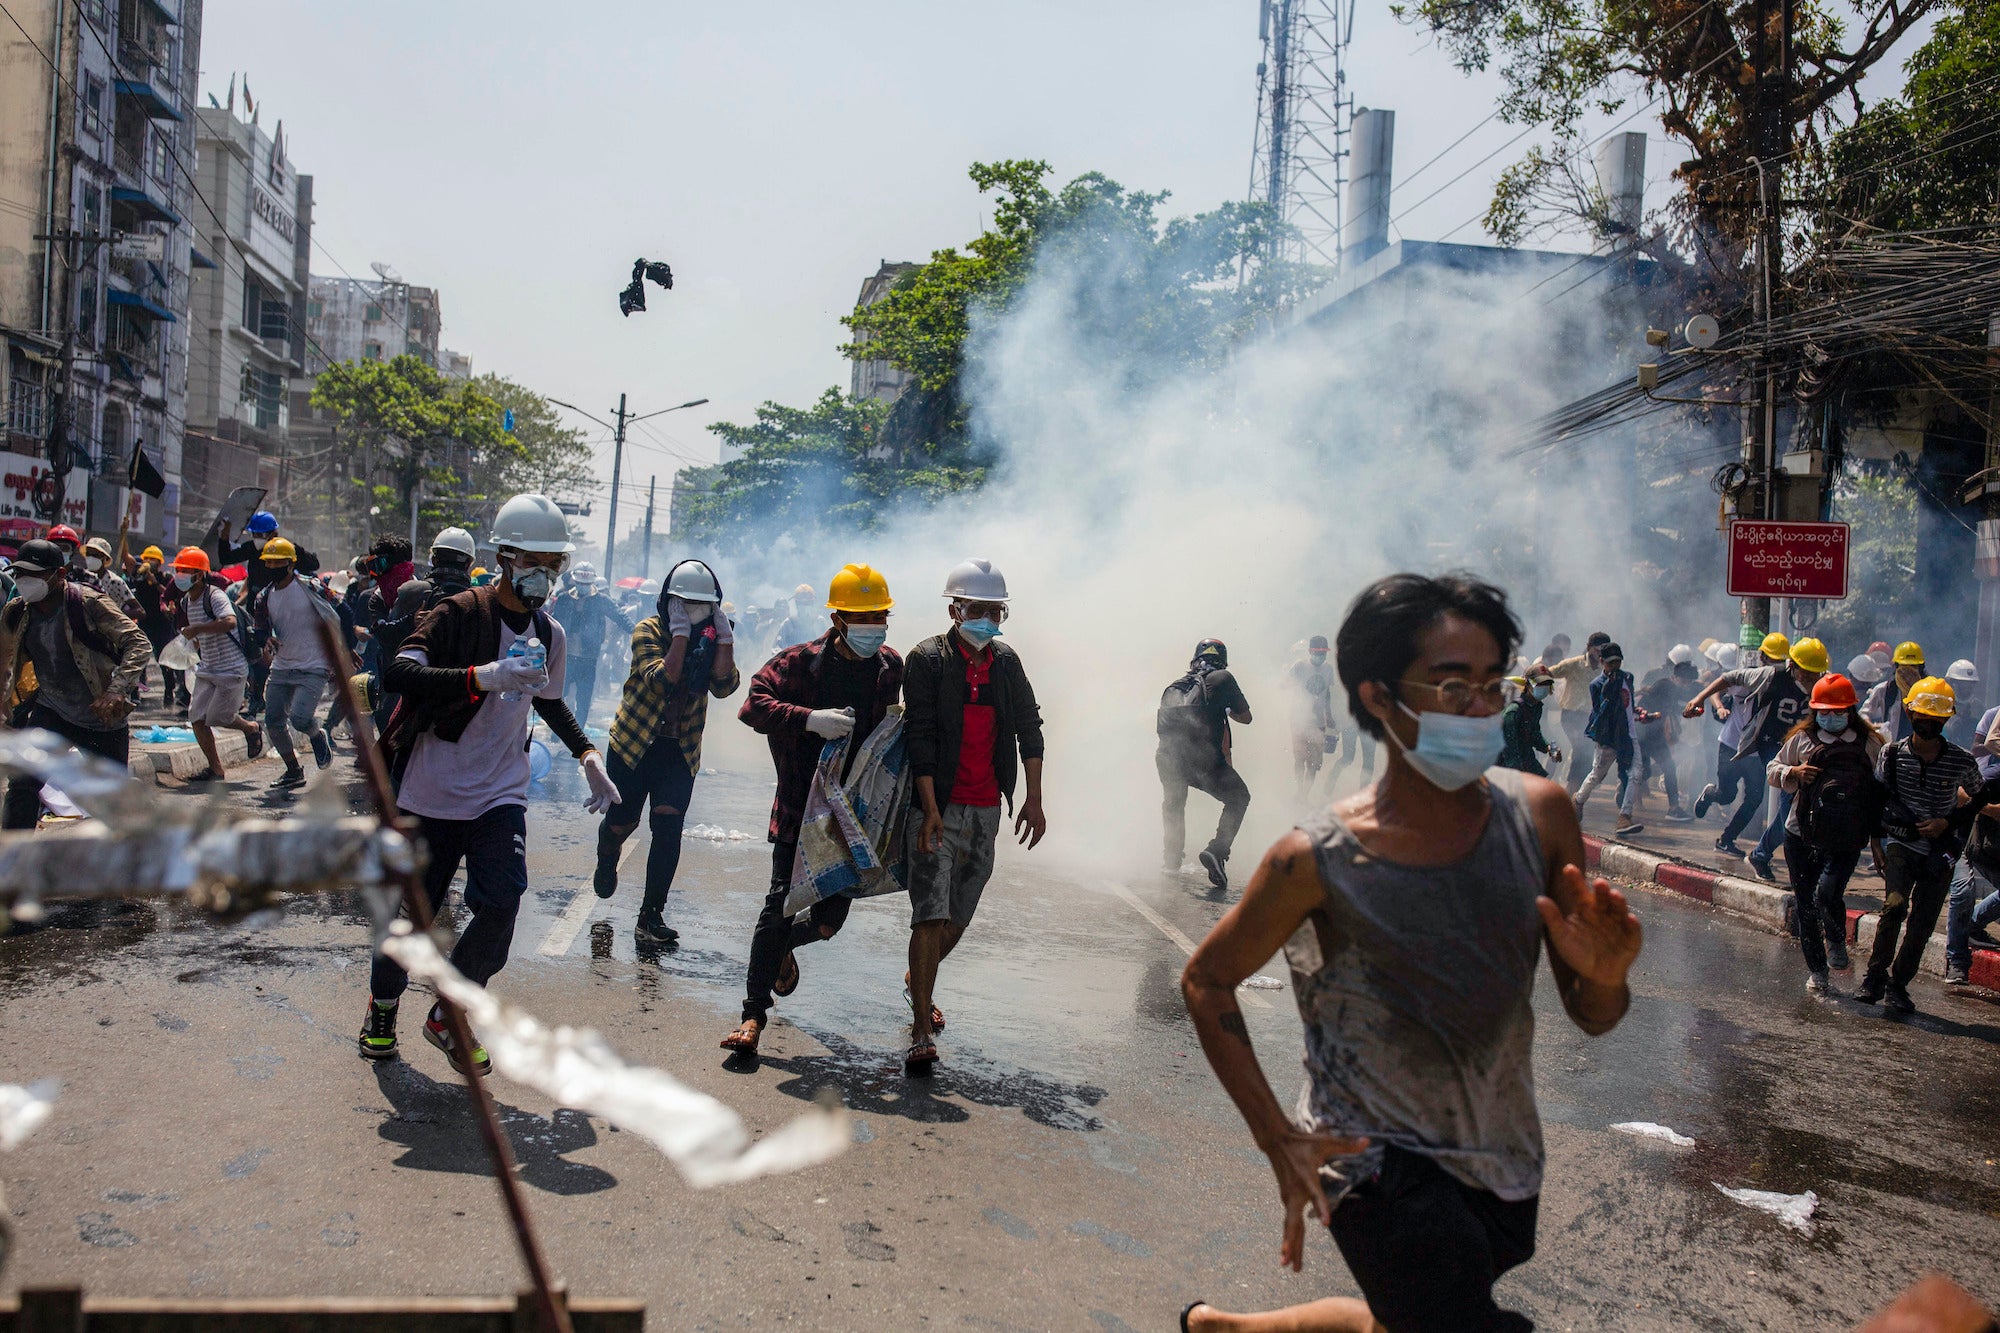 Des manifestants, dont un grand nombre portaient des casques jaunes et blancs, fuyaient sous des nuages de gaz lacrymogènes tirés par la police à Yangon, au Myanmar, le 1er mars 2021. Ces manifestants avaient tenté d’exprimer leur opposition au coup d'État militaire mené un mois auparavant, le 1er février 2021.